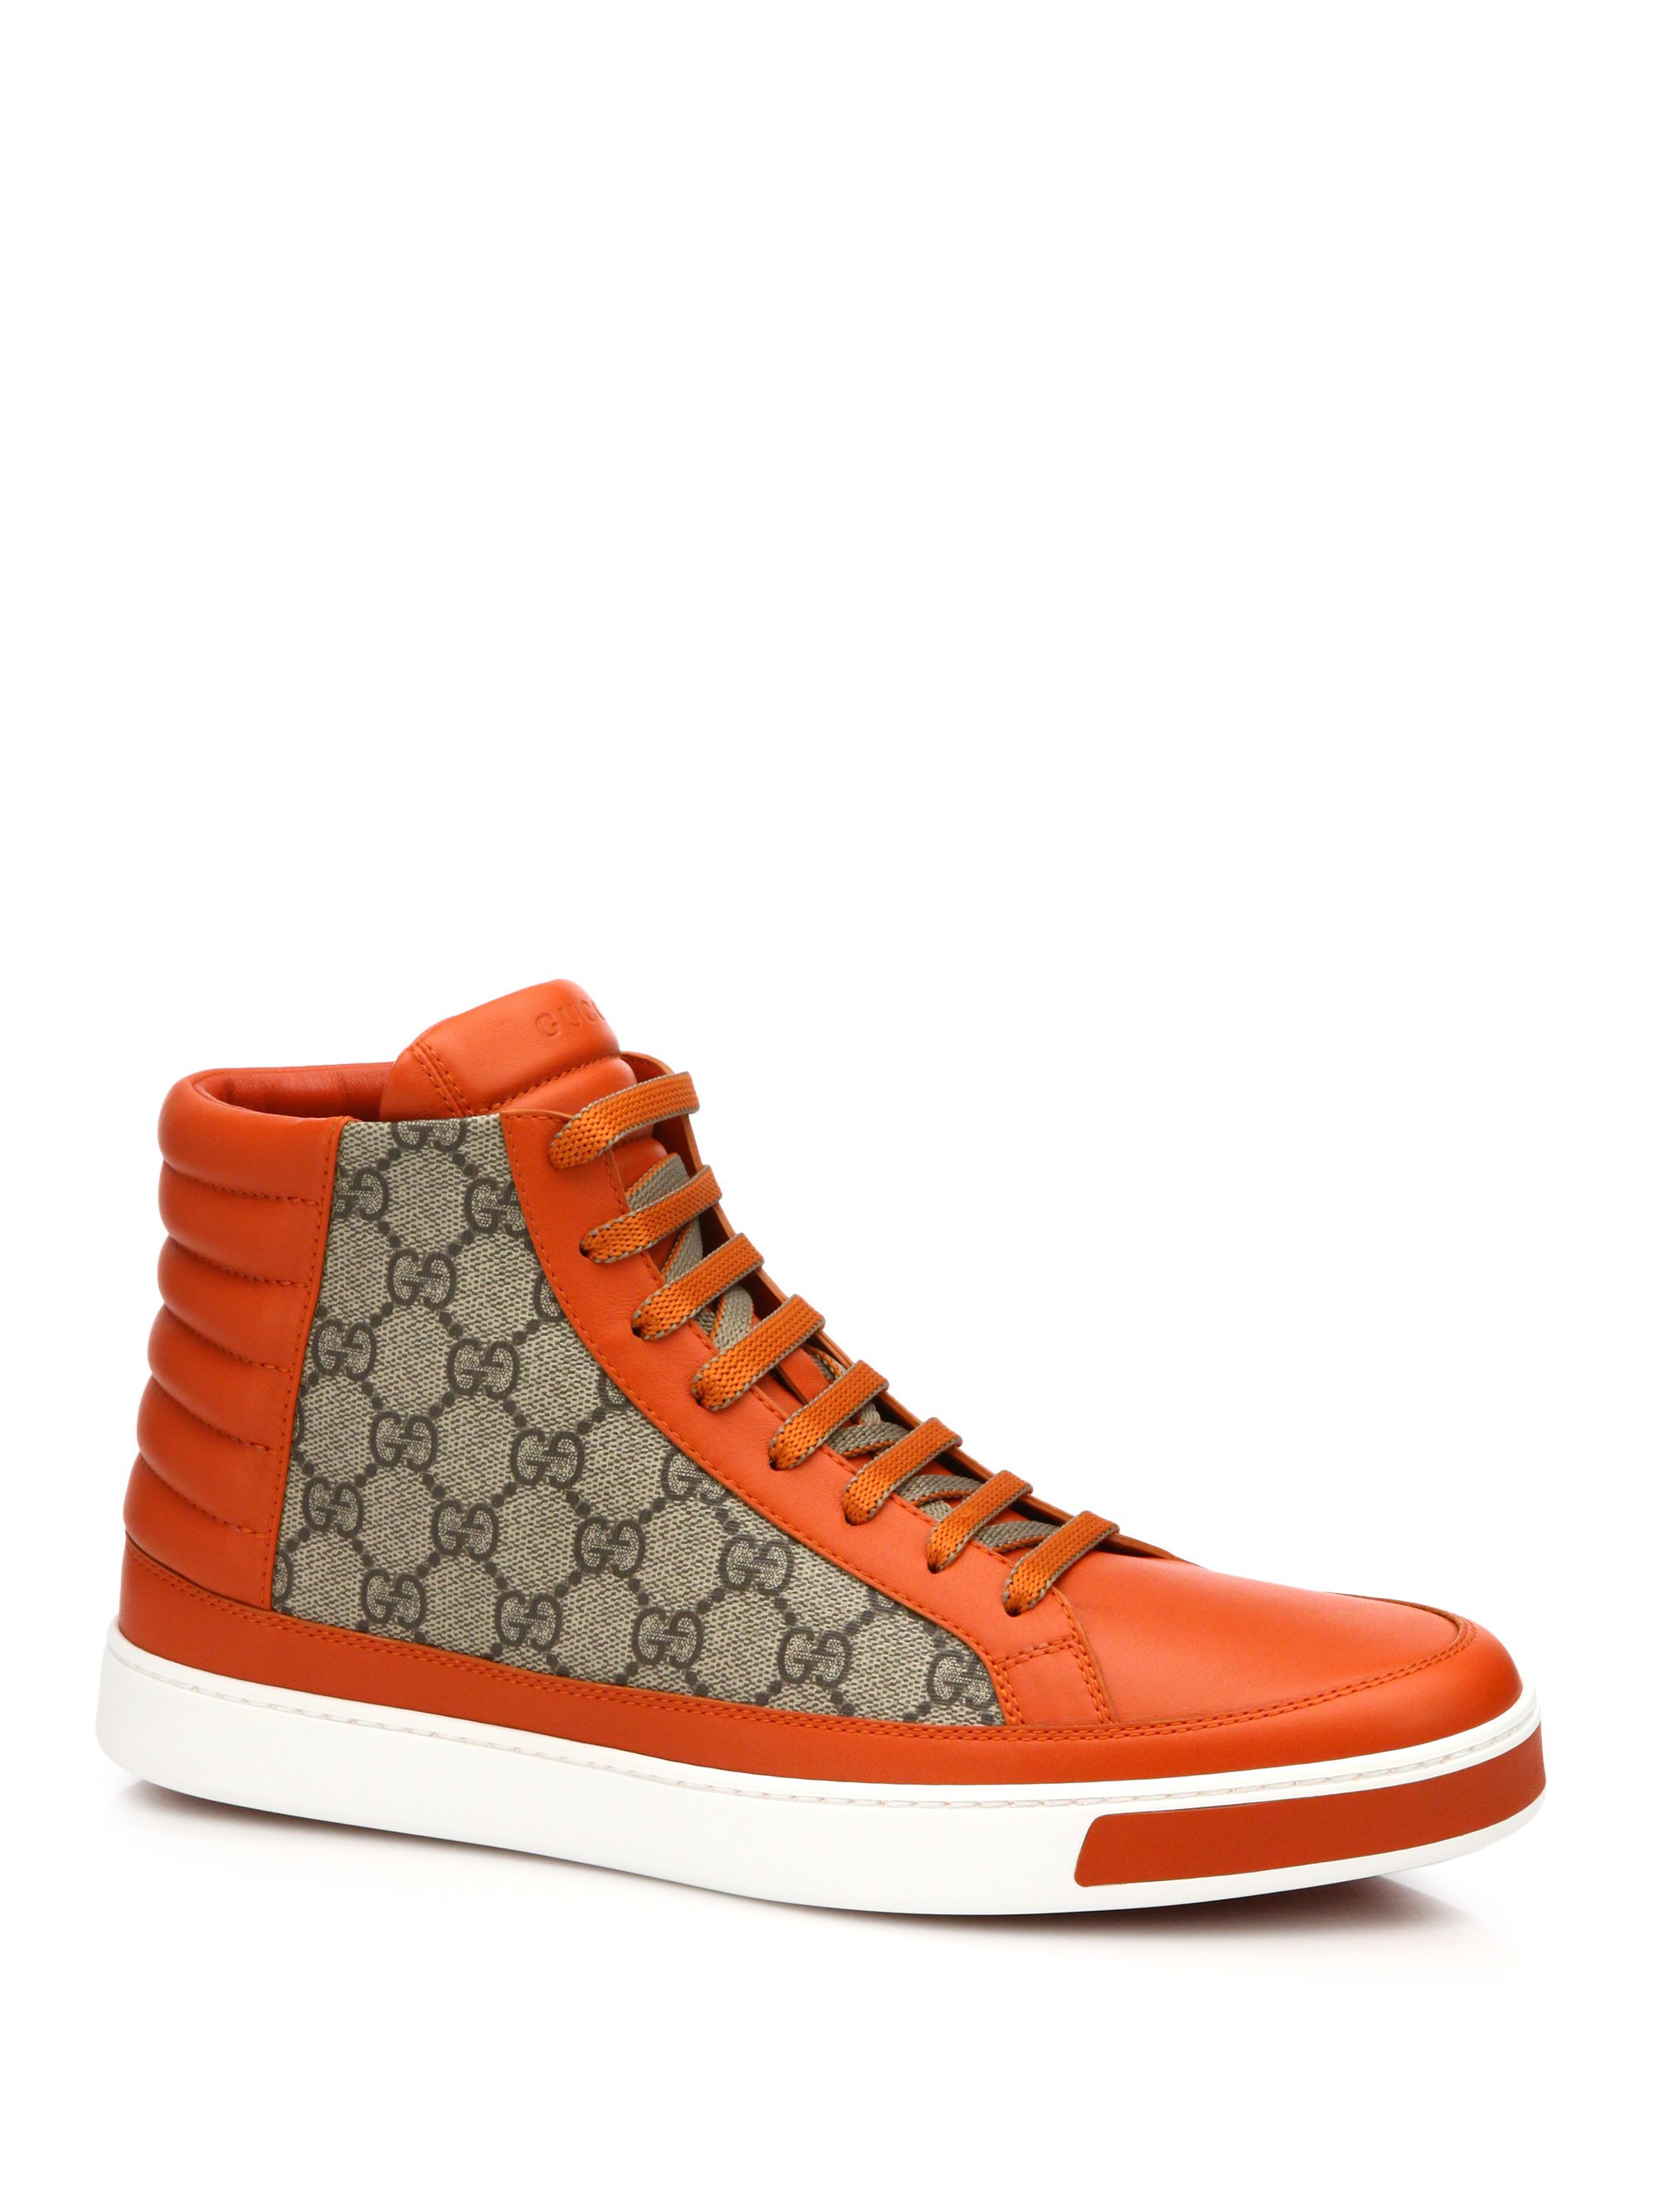 gucci sneakers orange